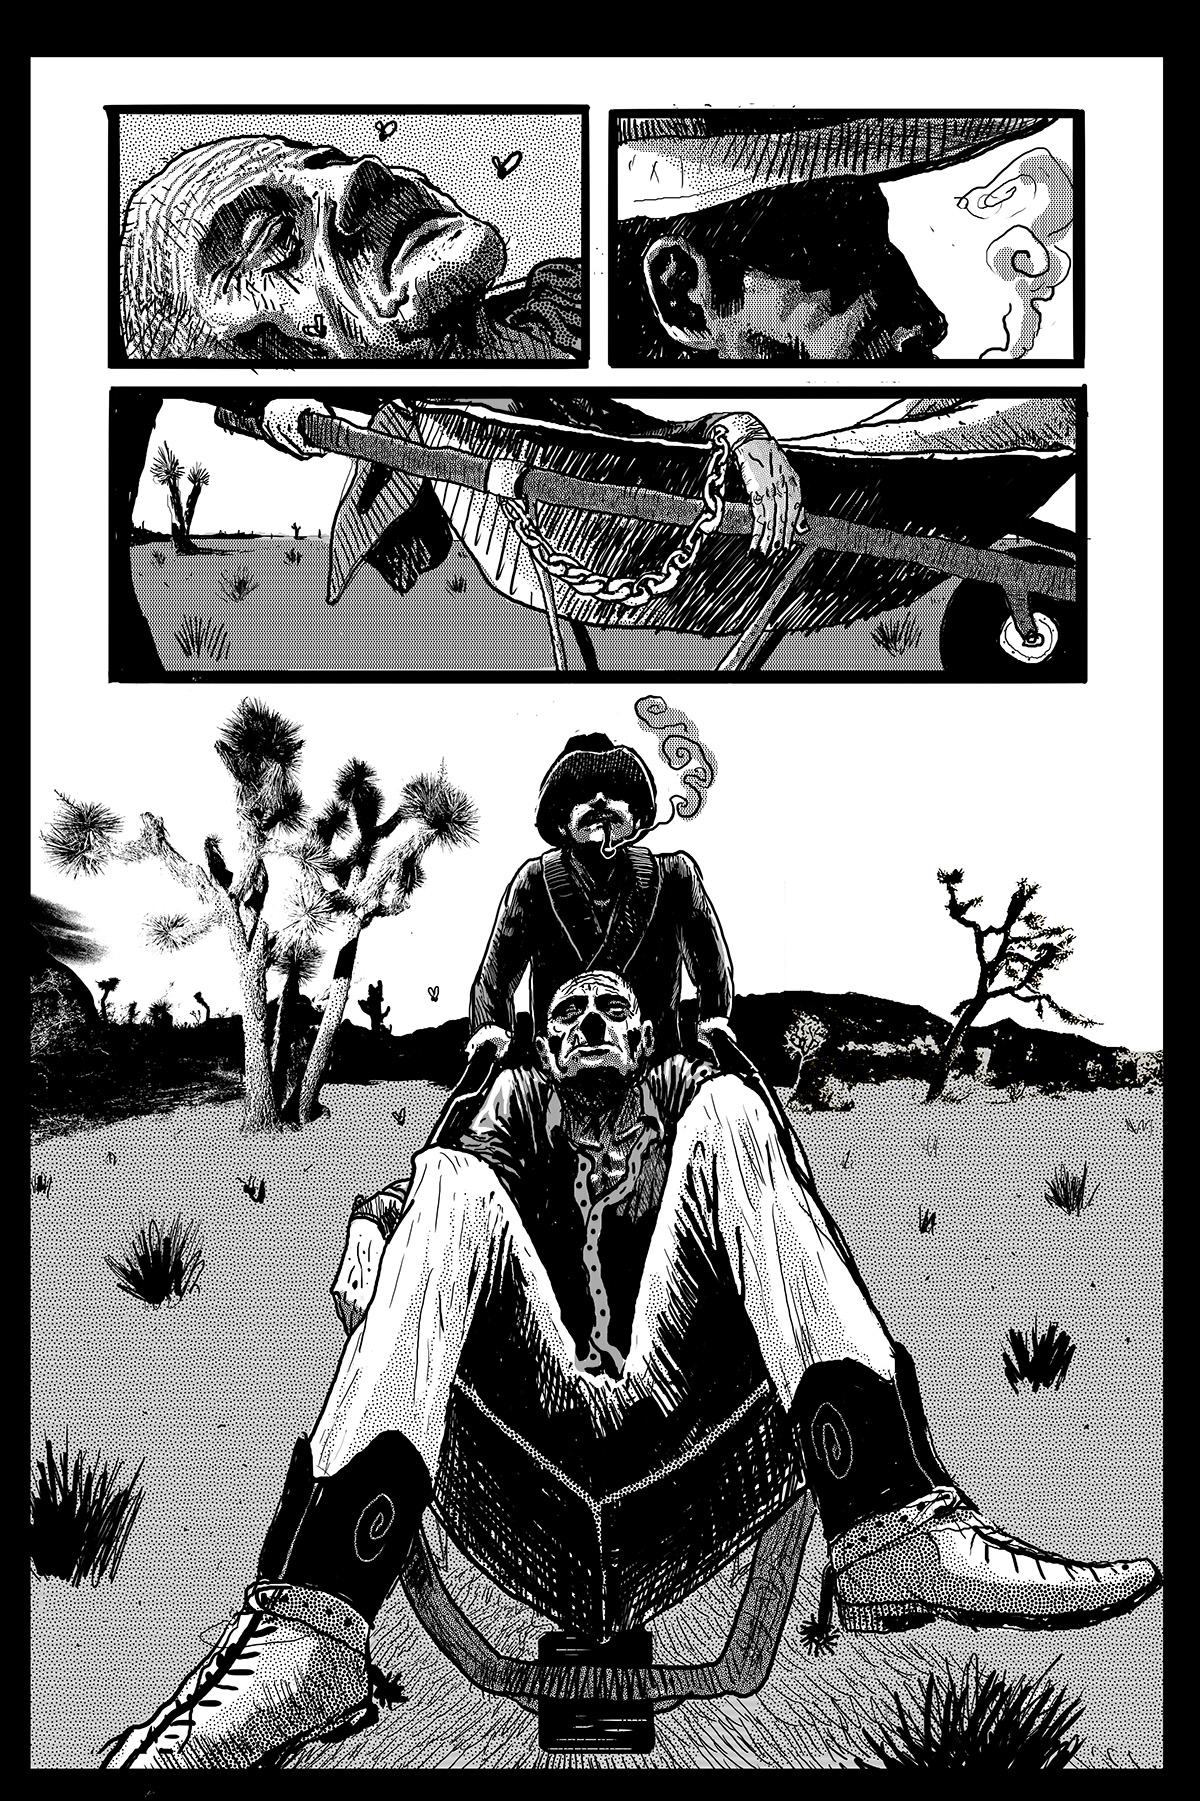 desert Graphic Novel comic western